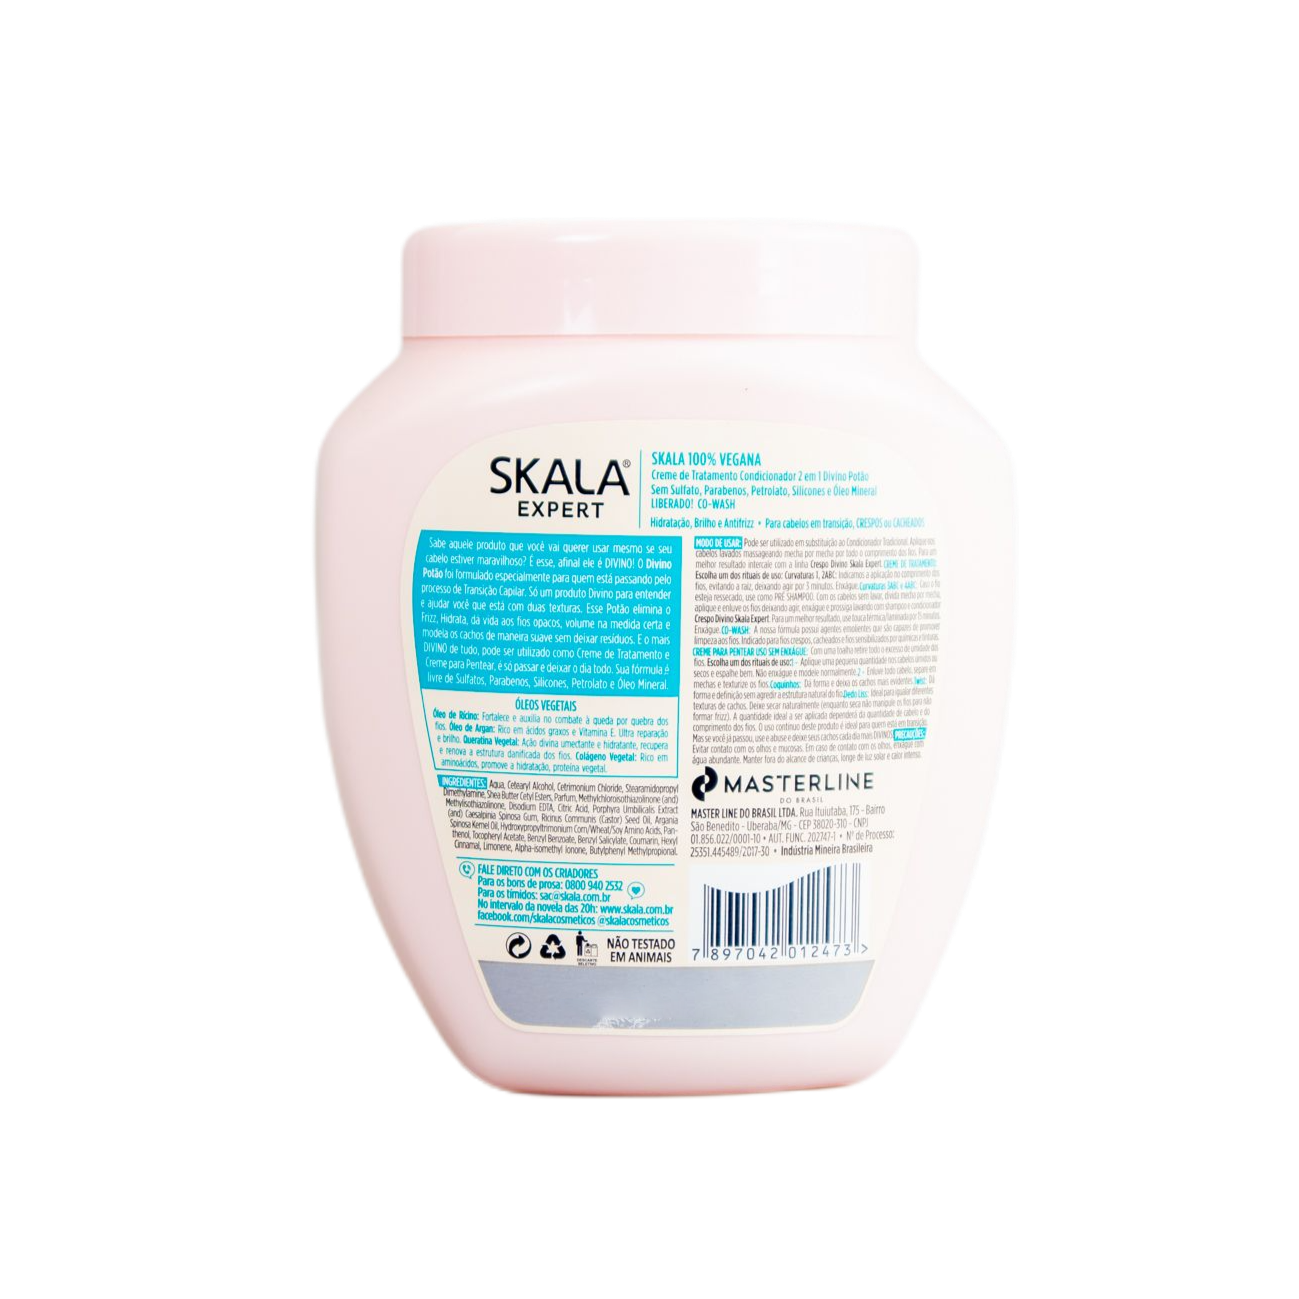 Skala Treatment Cream Divino Potão - 2 Em 1 - Creme Para Pentear + Creme Hidratante / Divine Potao - 2 1 - Combing Cream Moisturizer + Treatment Cream - Skala